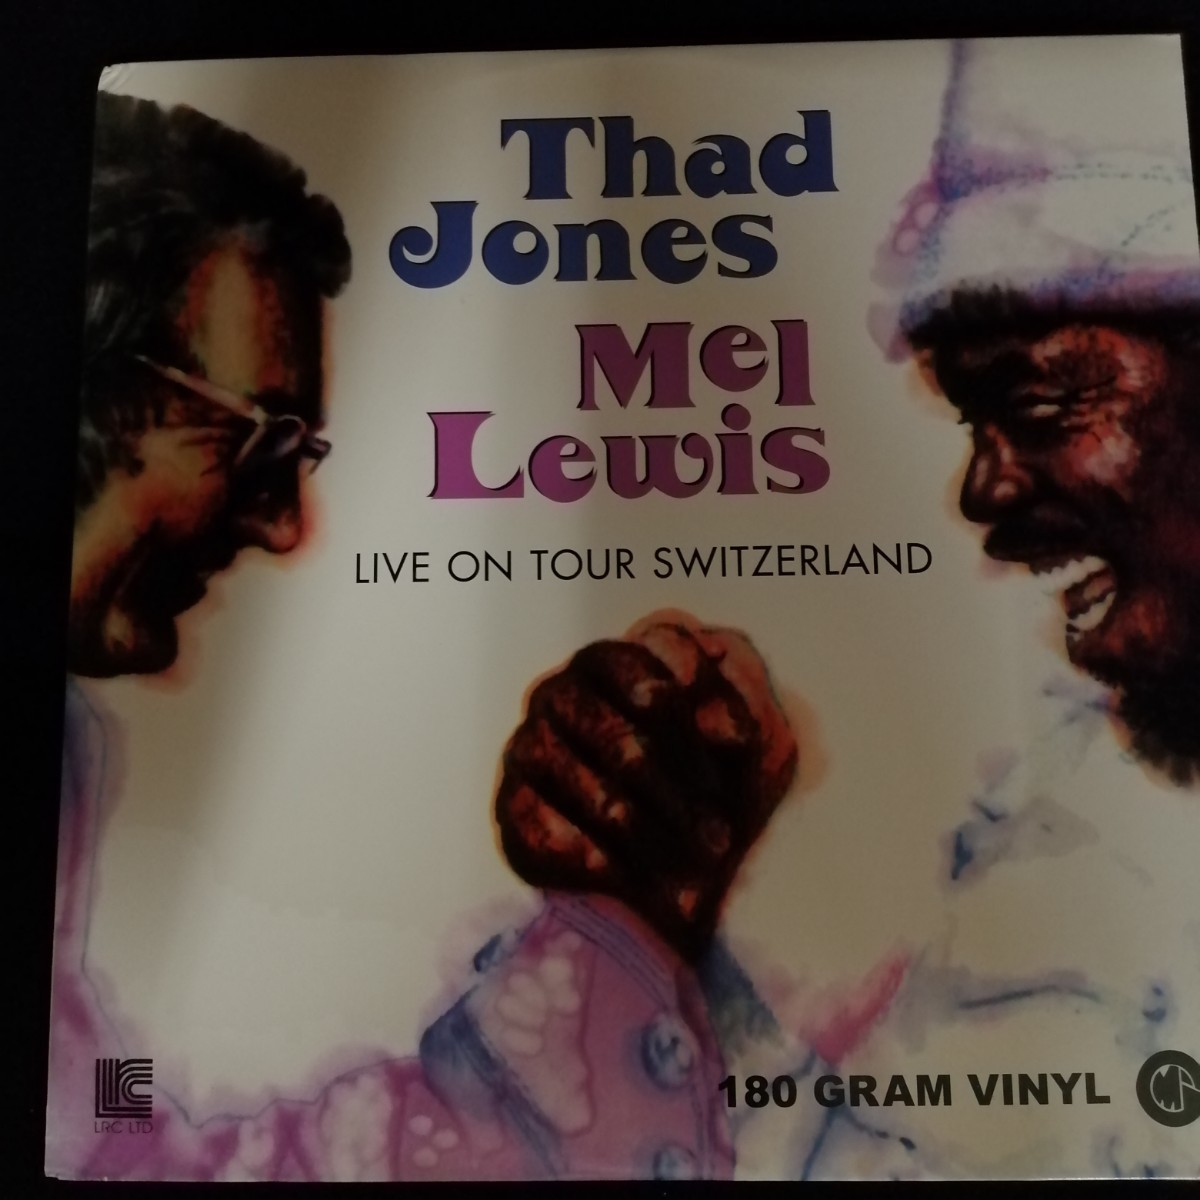 C07 中古LP 中古レコード サドジョーンズ / メルルイス live on tour Switzerland THAD JONES MEL LEWIS 2009年 US盤 180g GM29004_画像1